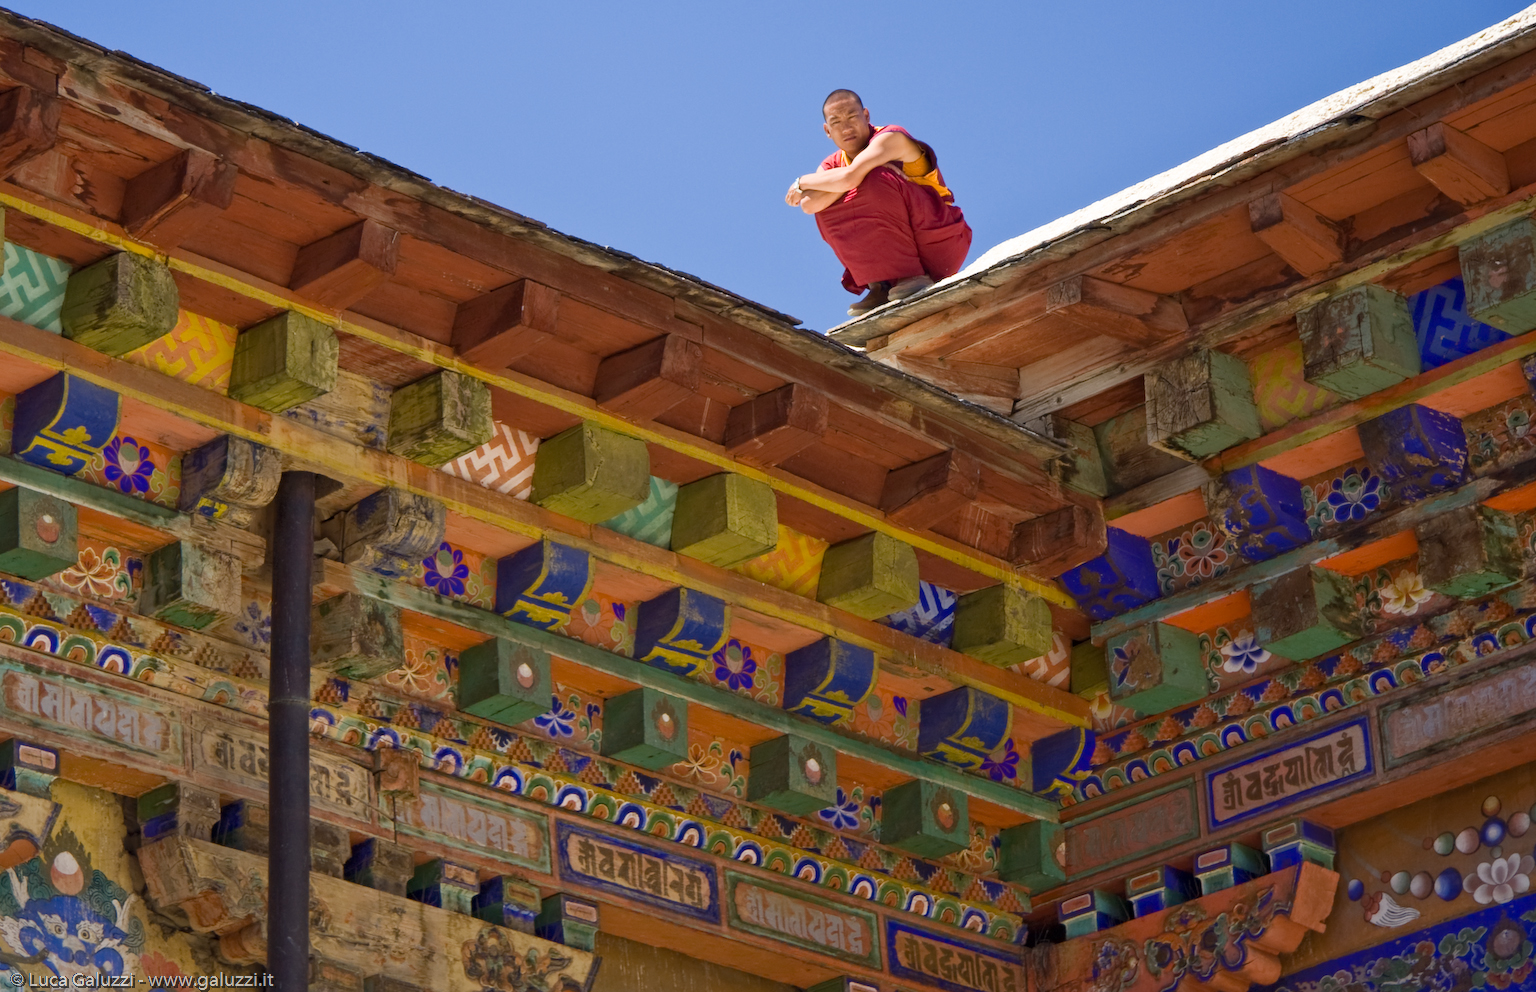 Il monastero di Sakya, fondato nel 1073, è la sede della scuola Sakyapa del buddismo tibetano.